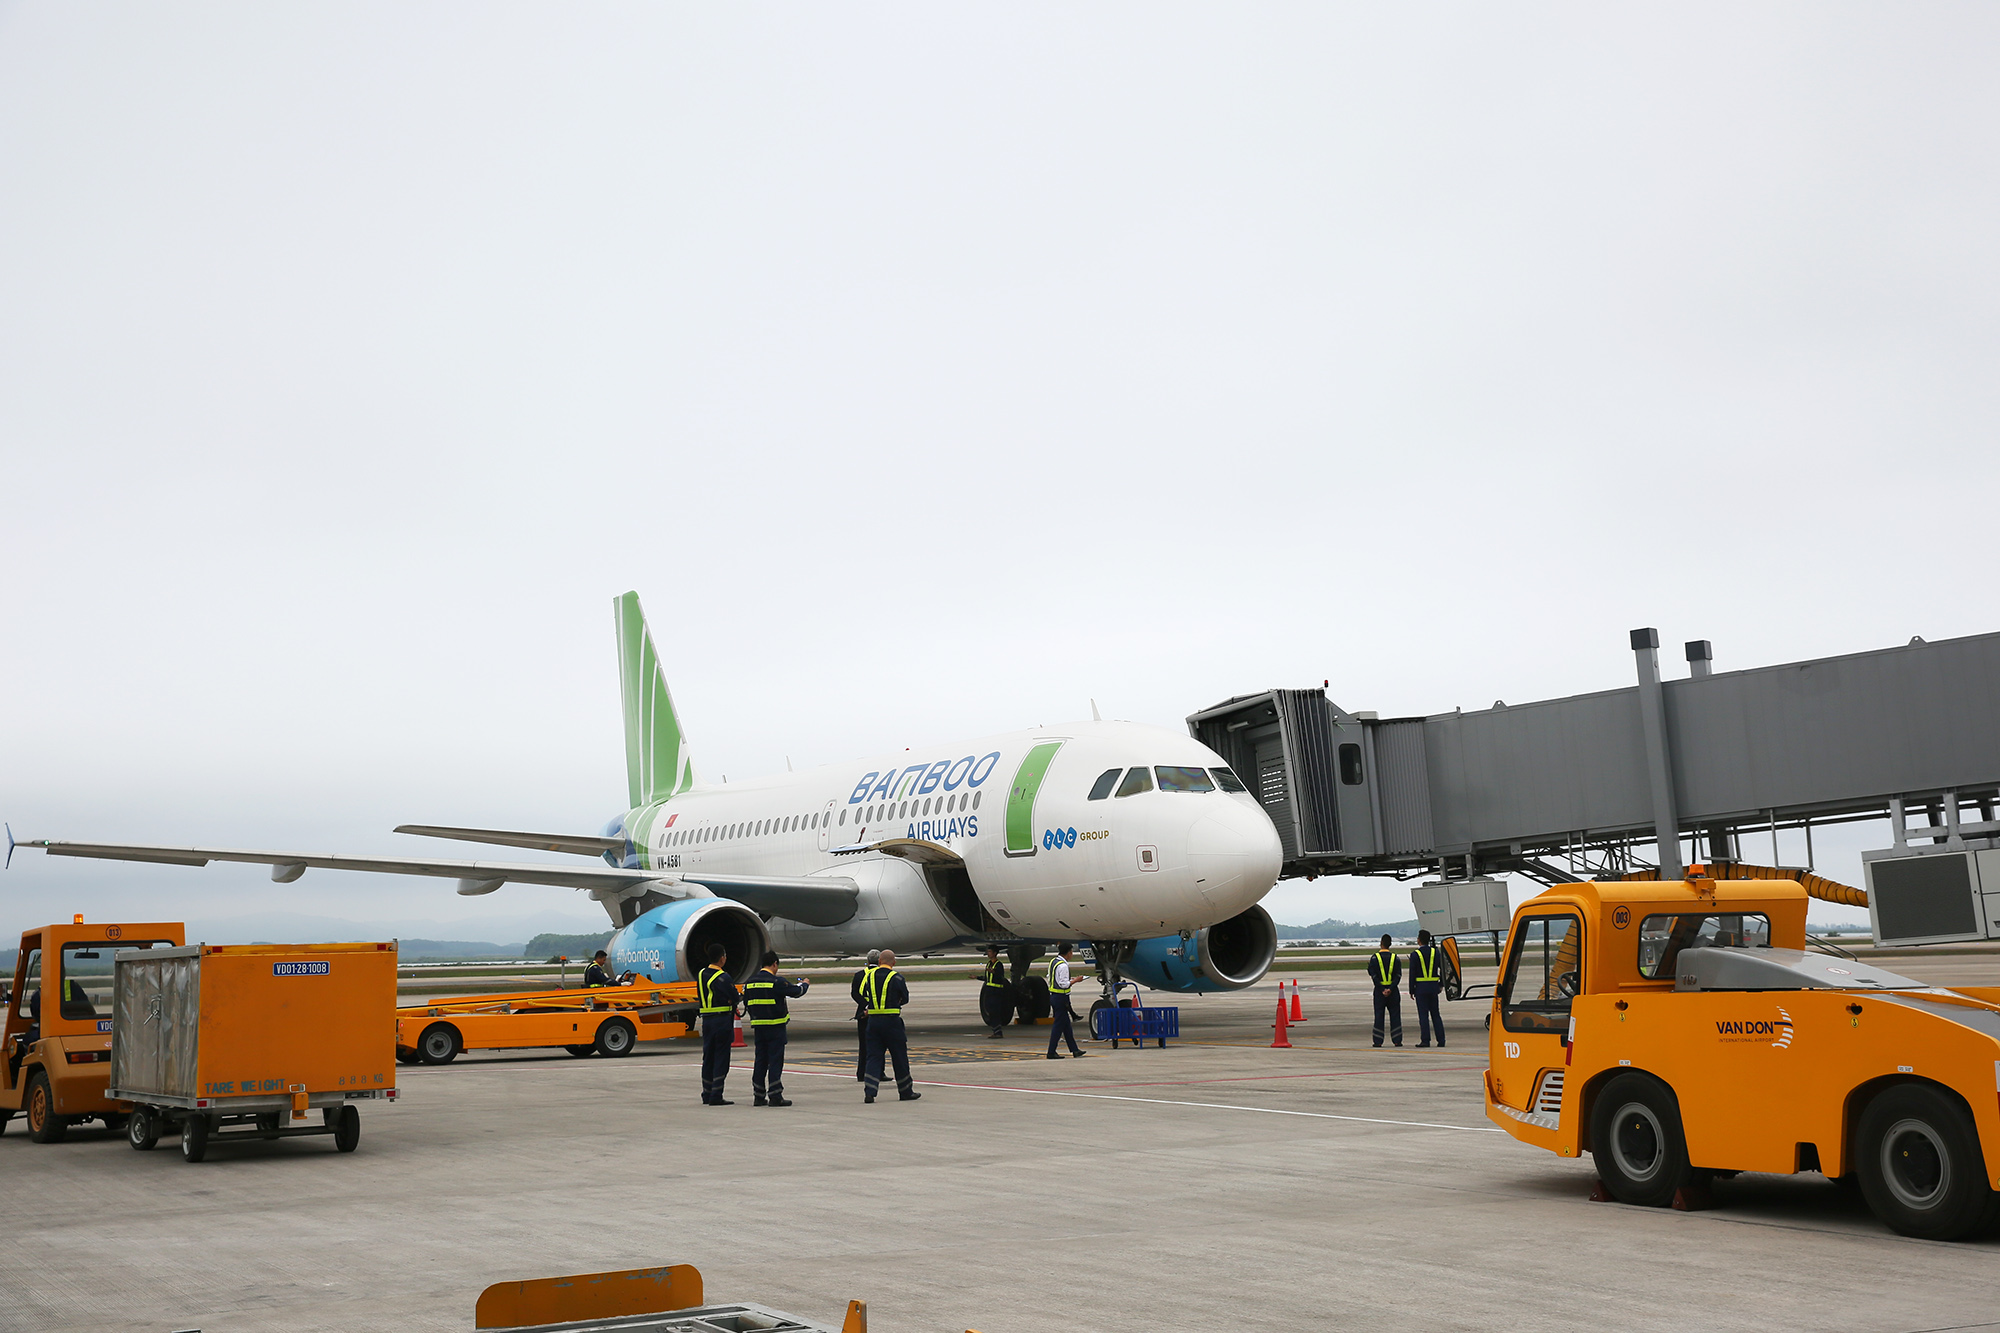 chuyến bay VN A581 thuộc hãng hàng không Bamboo Airways đã đưa những vị khách đầu tiên từ TP Hồ Chí Minh “xông” Cảng hàng không quốc tế Vân Đồn